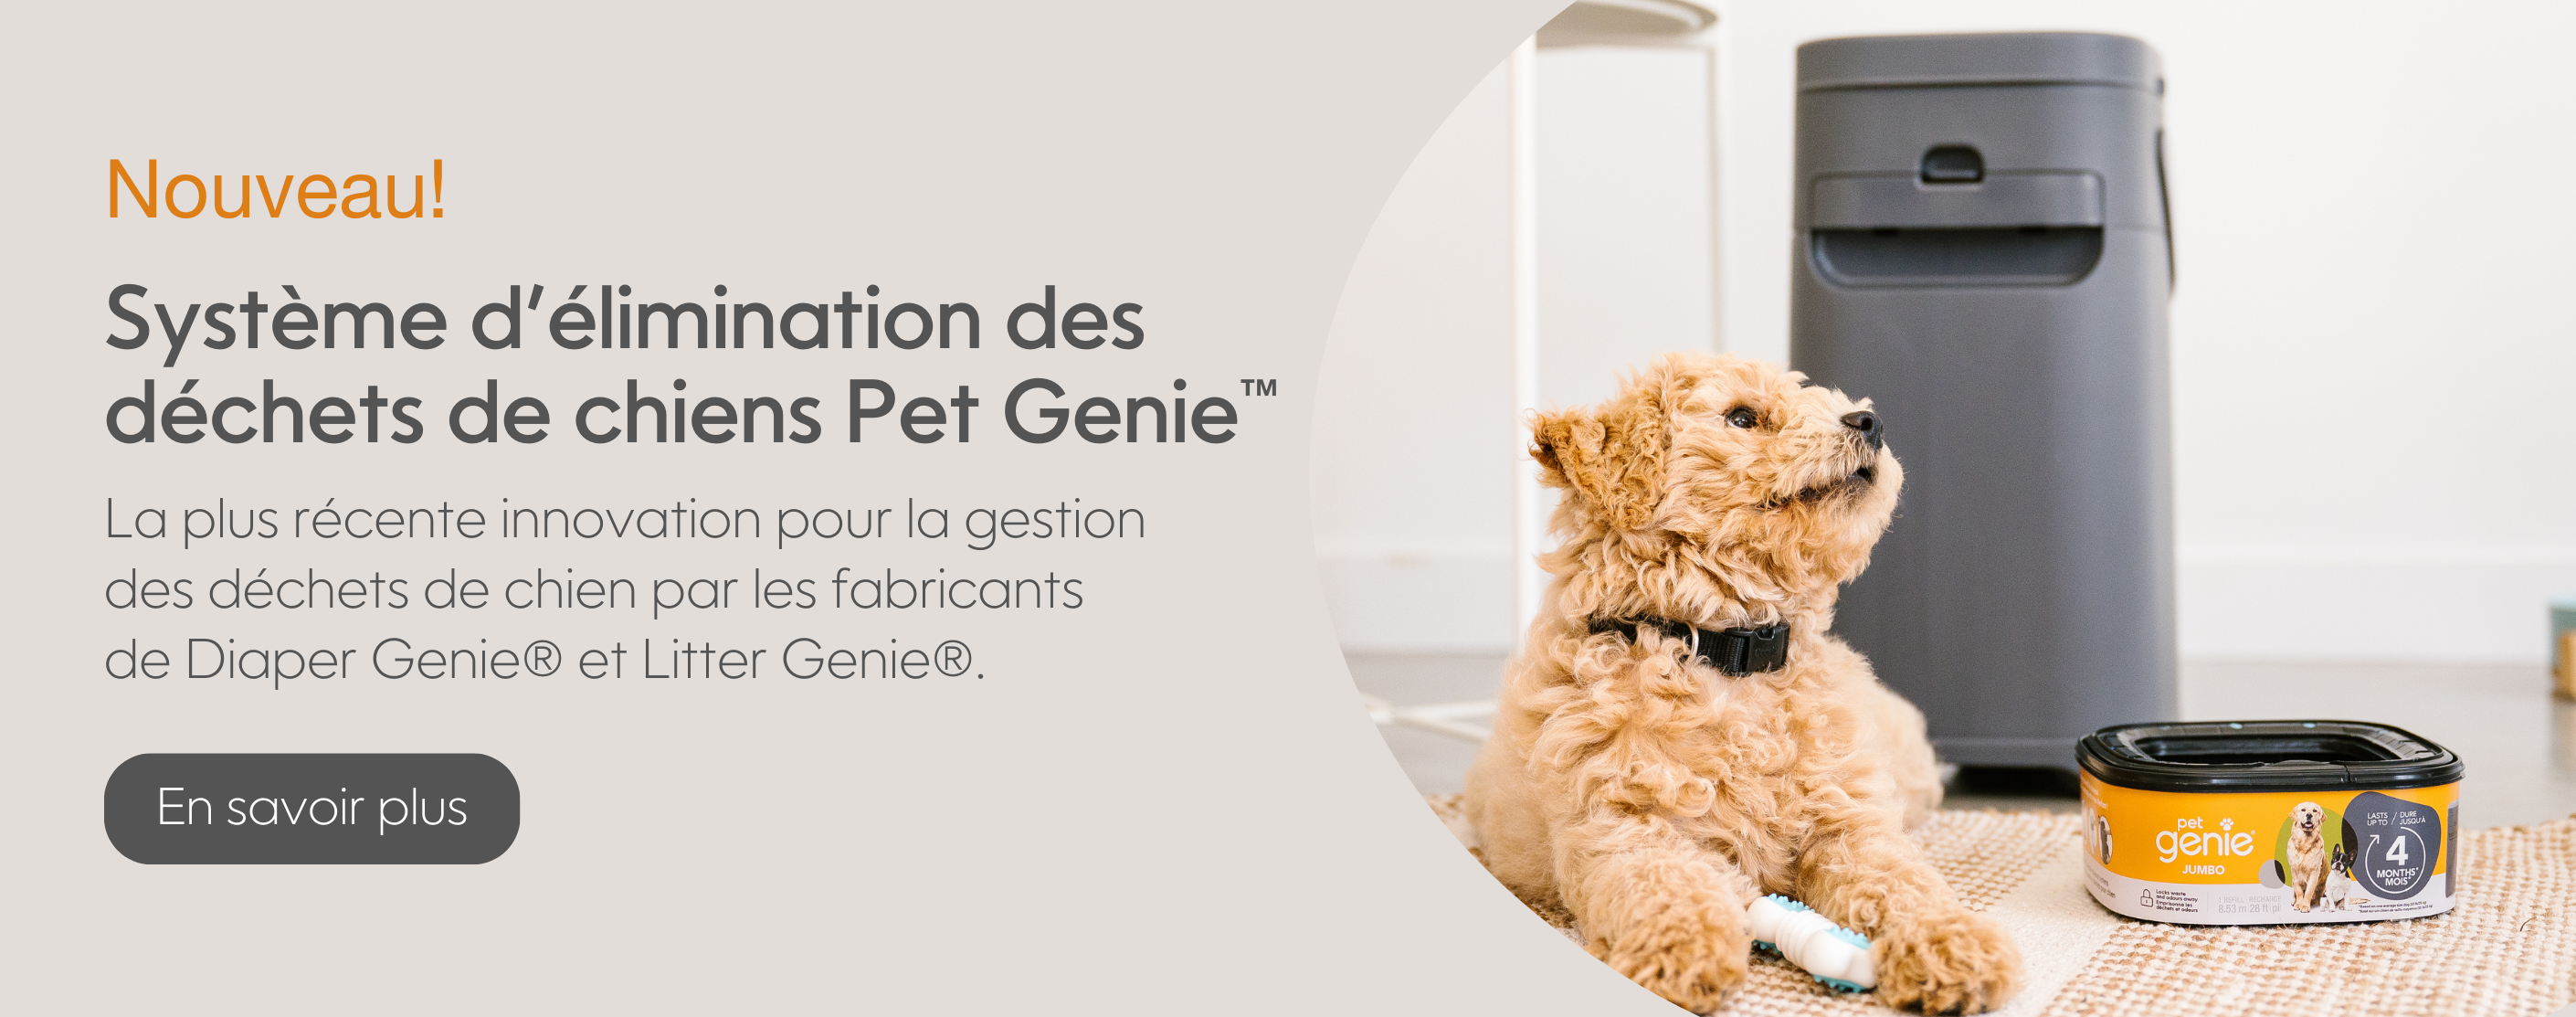 2820X1113 - Retailer Banner - Pet Genie - FR